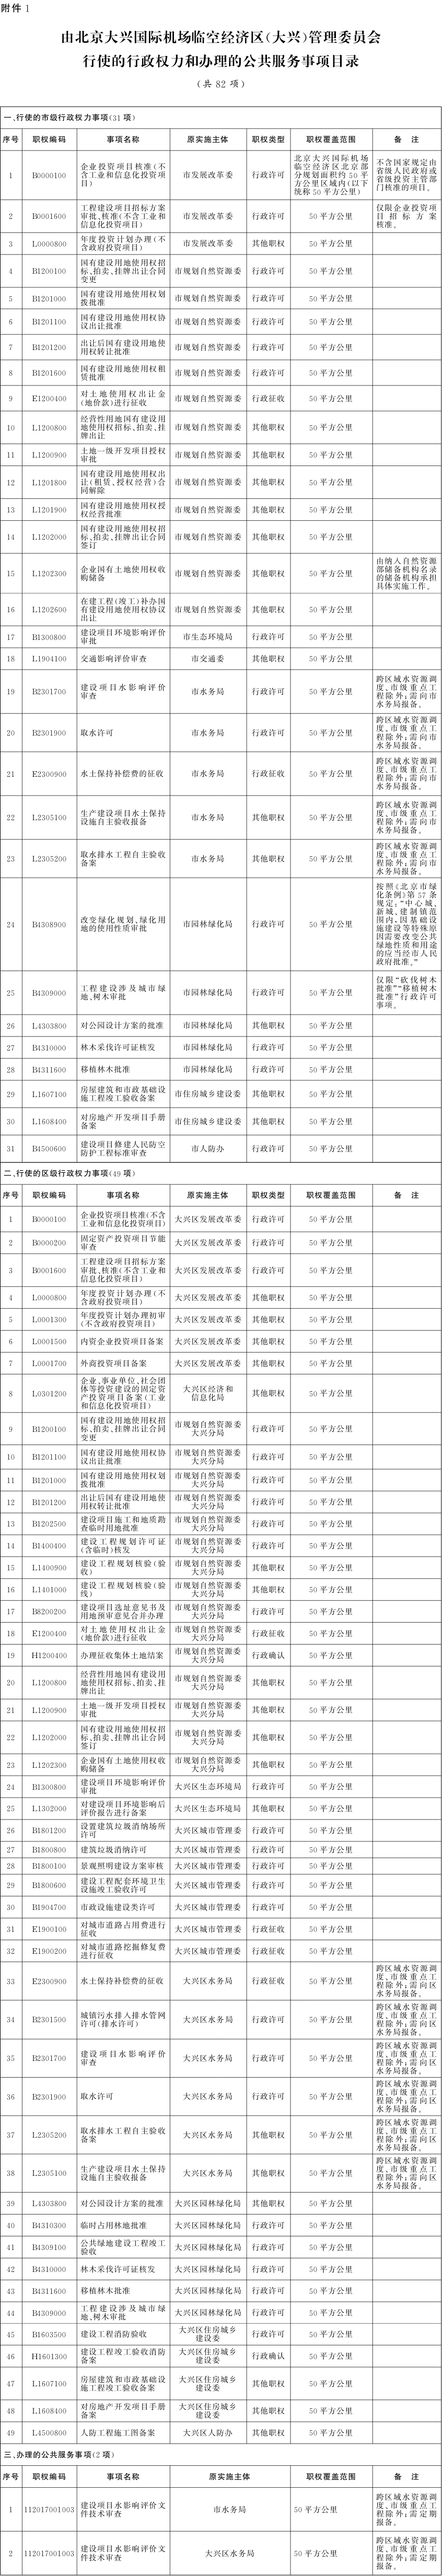 附件1：由北京大興國際機場臨空經濟區(大興)管理委員會行使的行政權力和辦理的公共服務事項目錄.png